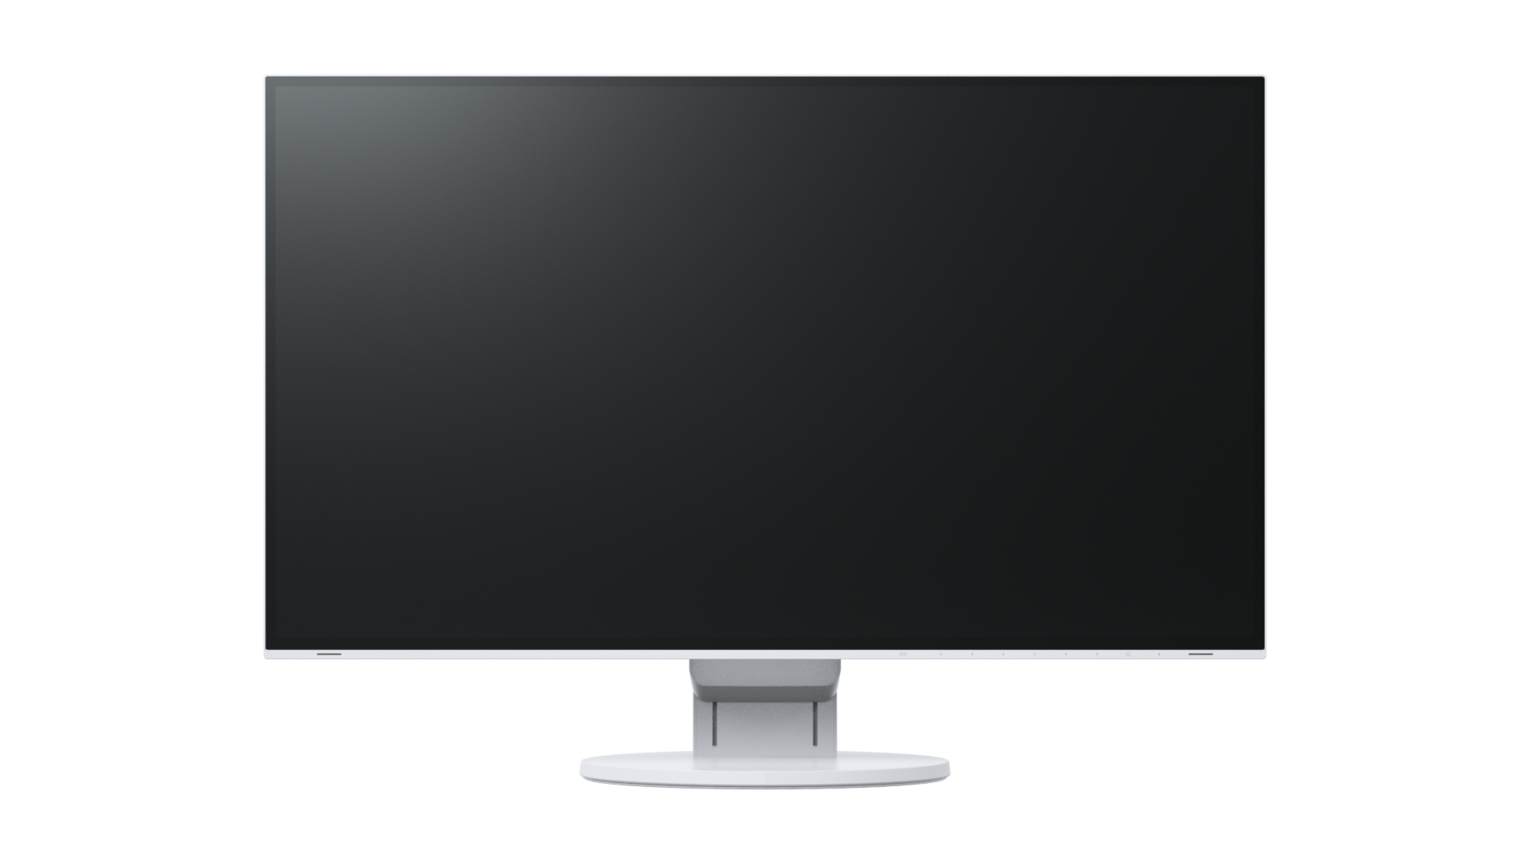 FlexScan EV2785 | 27-inch 4K UHD monitor with USB-C port